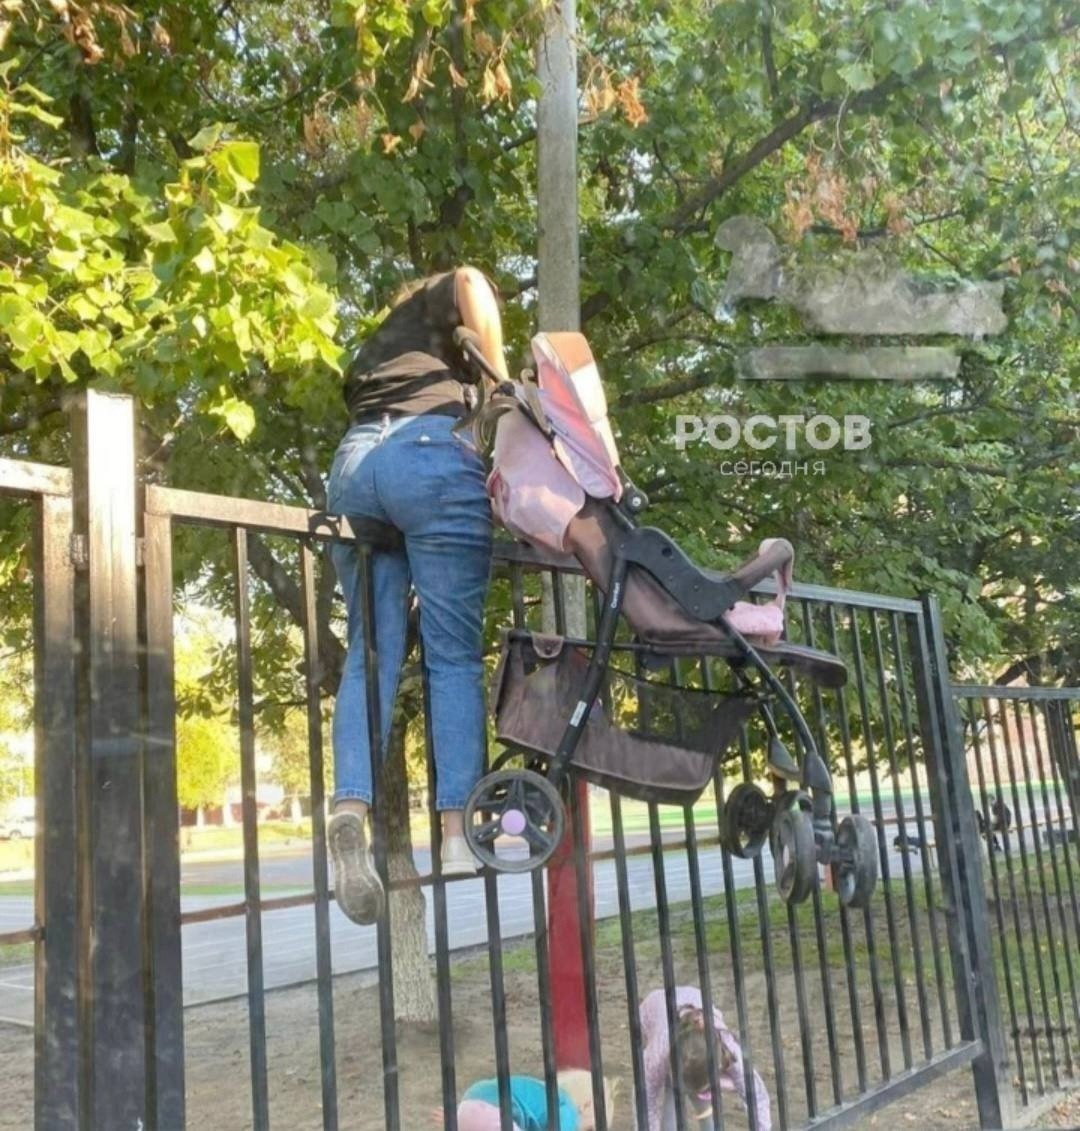 Жительница Ростова решила не обходить забор вокруг школы №30 на Северном. Молодая мама перелезла через него с двумя детьми и коляской. 